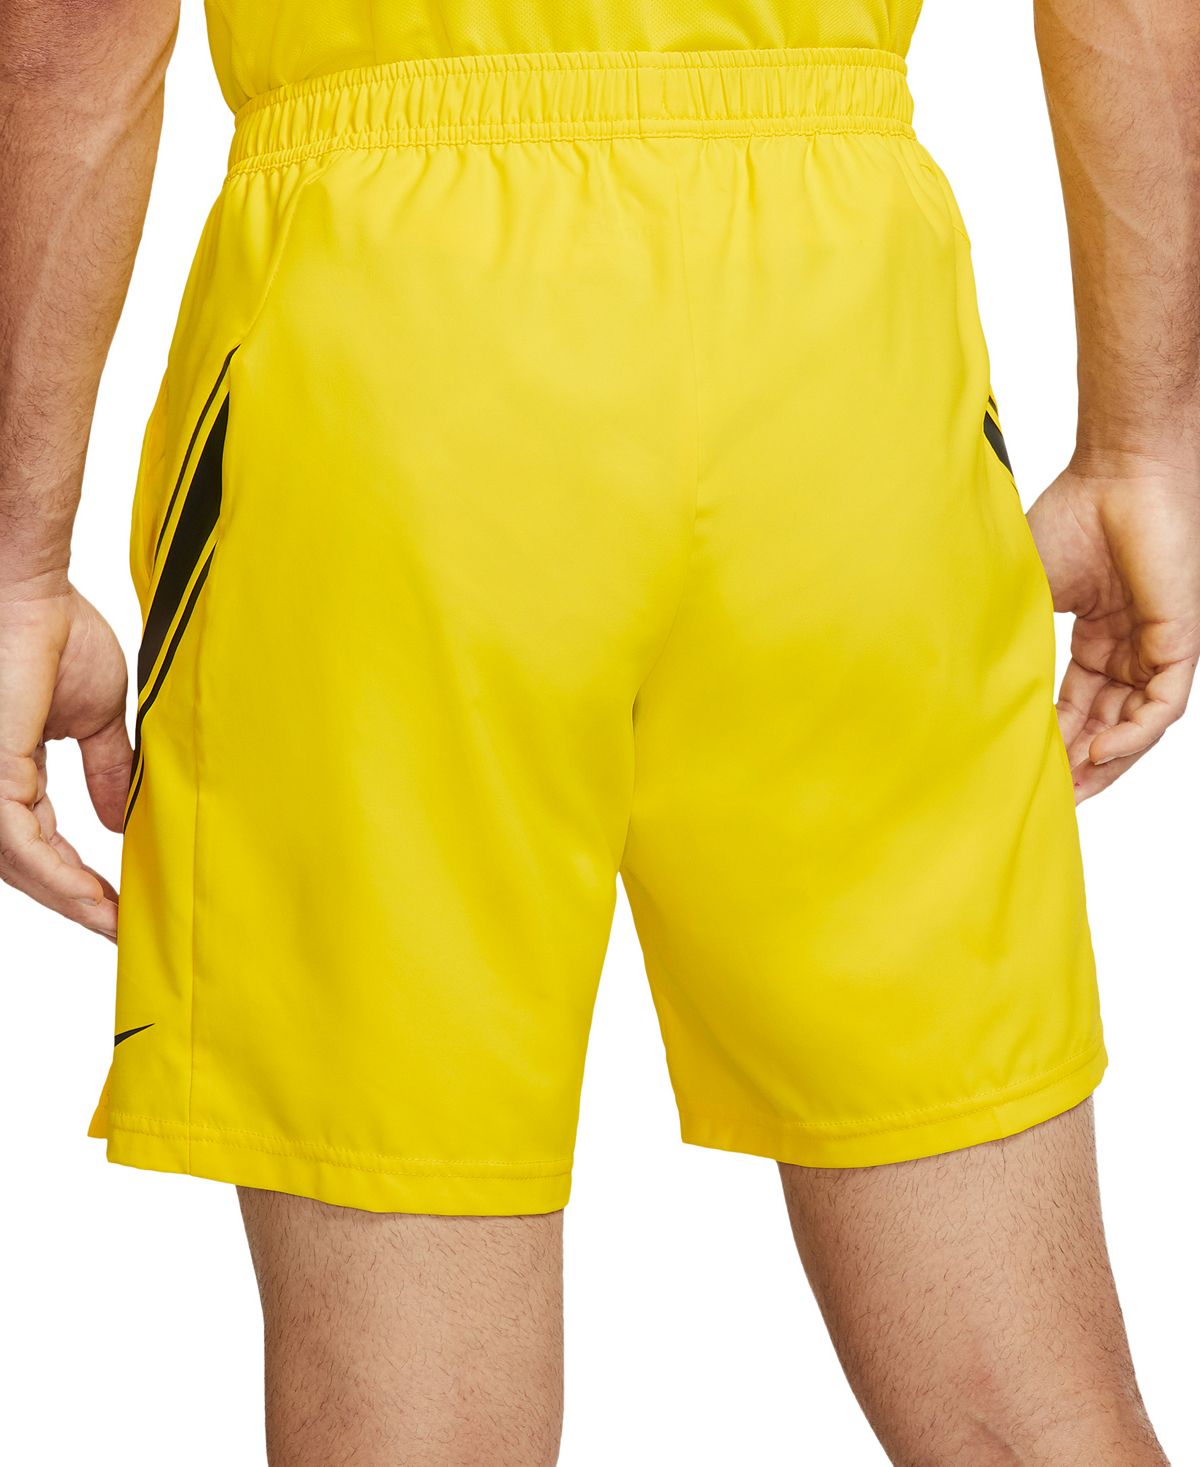 Nike Court Dry 9" Tennis Shorts Opti Yellow